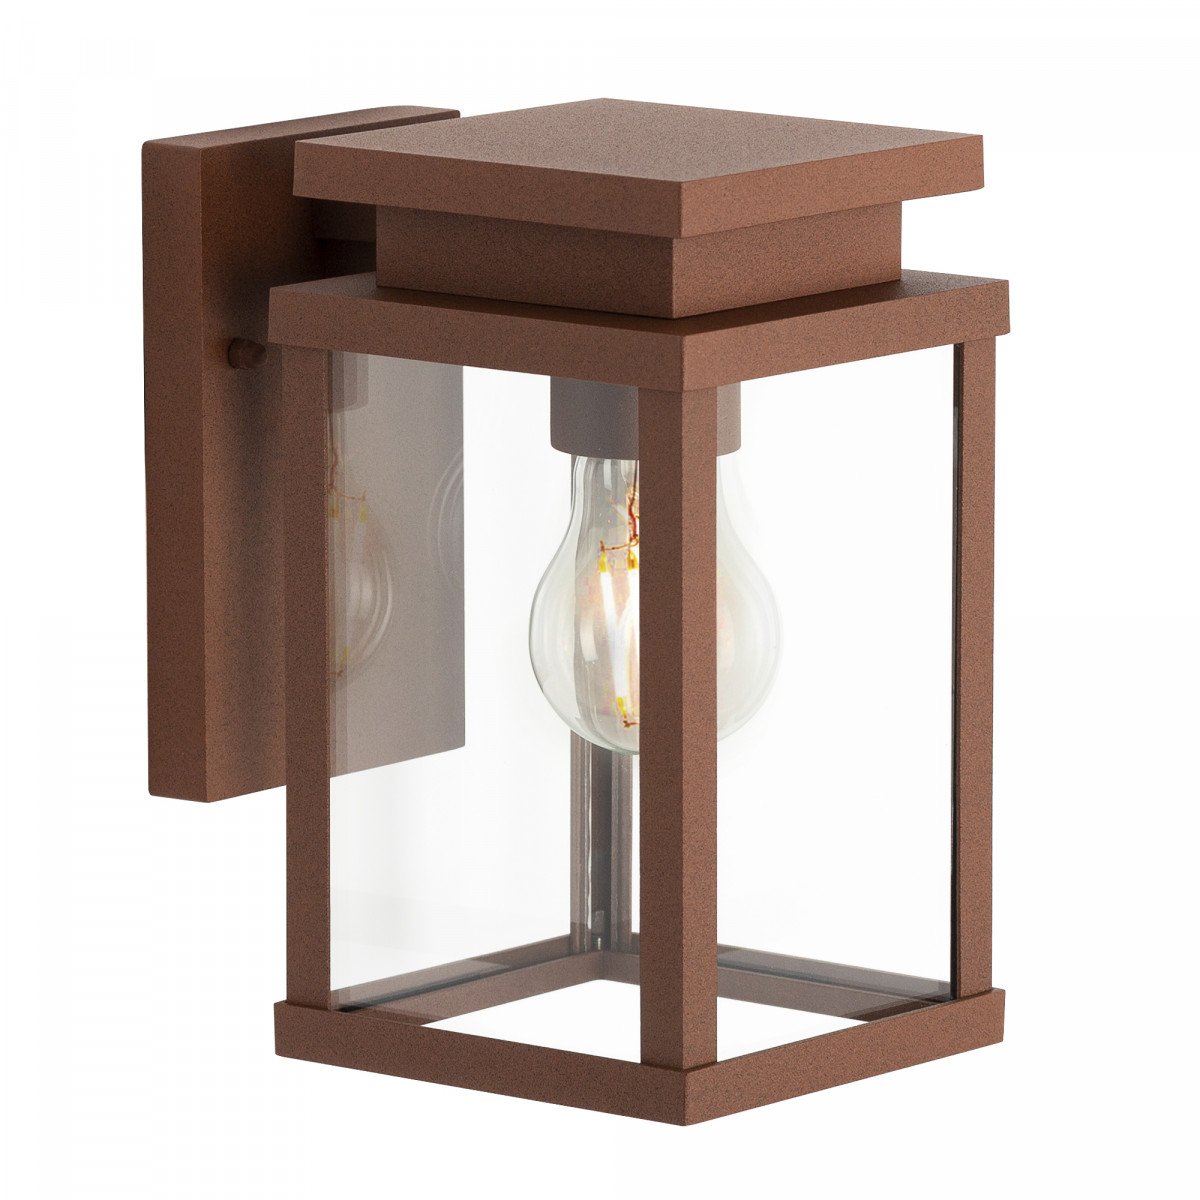 Lampe d'extérieur Jersey en acier corten, applique couleur rouille pour l'extérieur, éclairage extérieur moderne et épuré